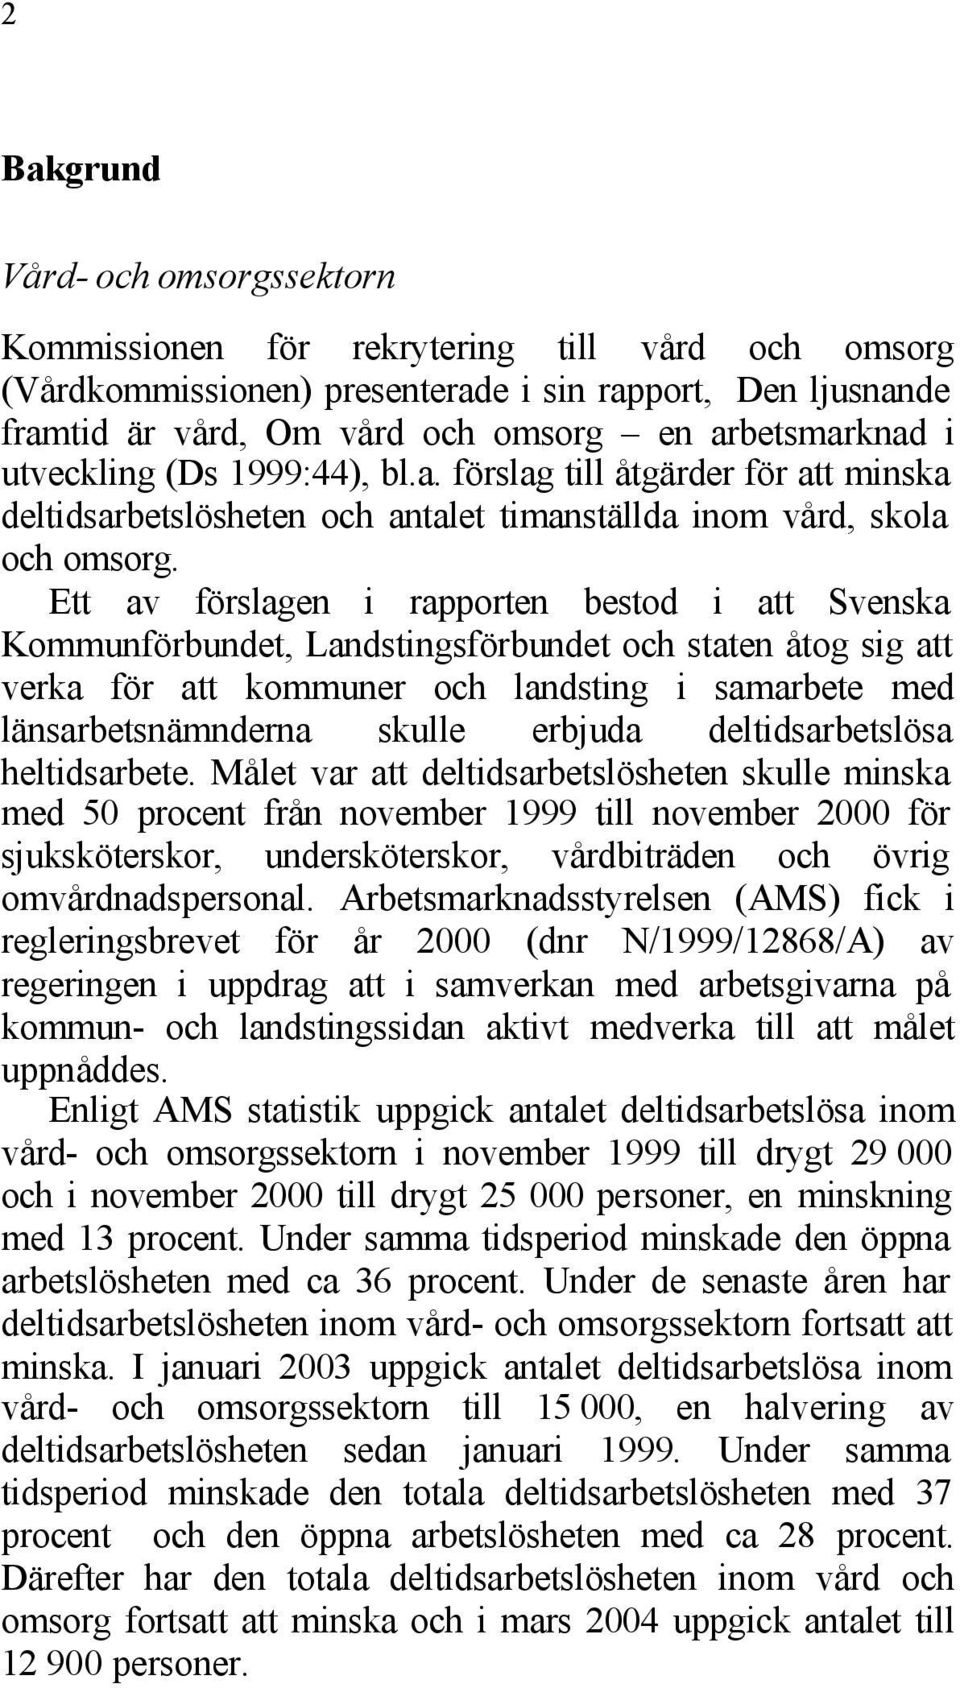 Ett av förslagen i rapporten bestod i att Svenska Kommunförbundet, Landstingsförbundet och staten åtog sig att verka för att kommuner och landsting i samarbete med länsarbetsnämnderna skulle erbjuda